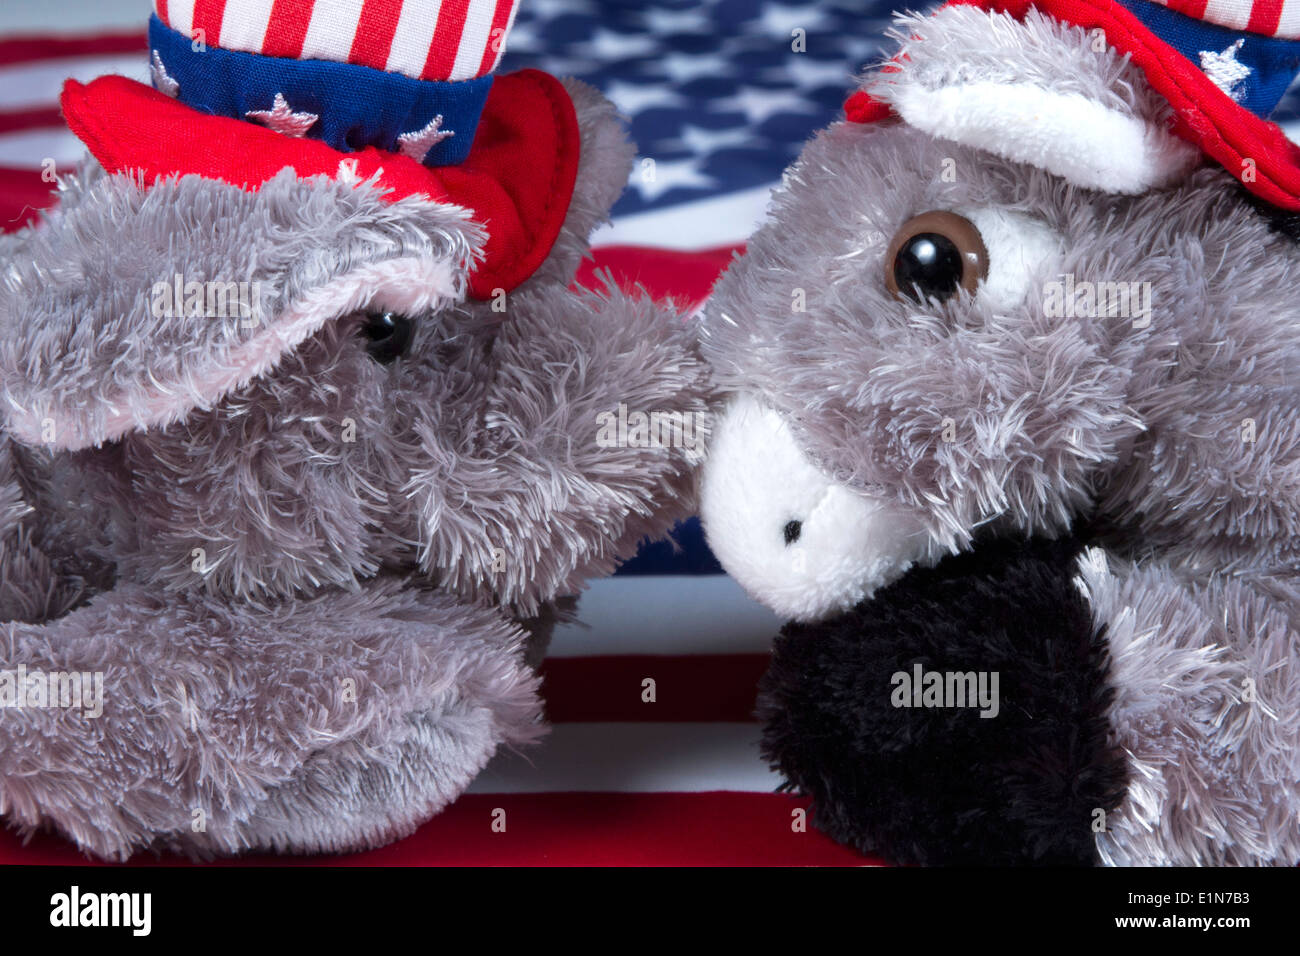 Elefant der Republikaner und Demokraten Esel Spielzeug Maskottchen Nase an Nase vor einer amerikanischen Flagge Stockfoto